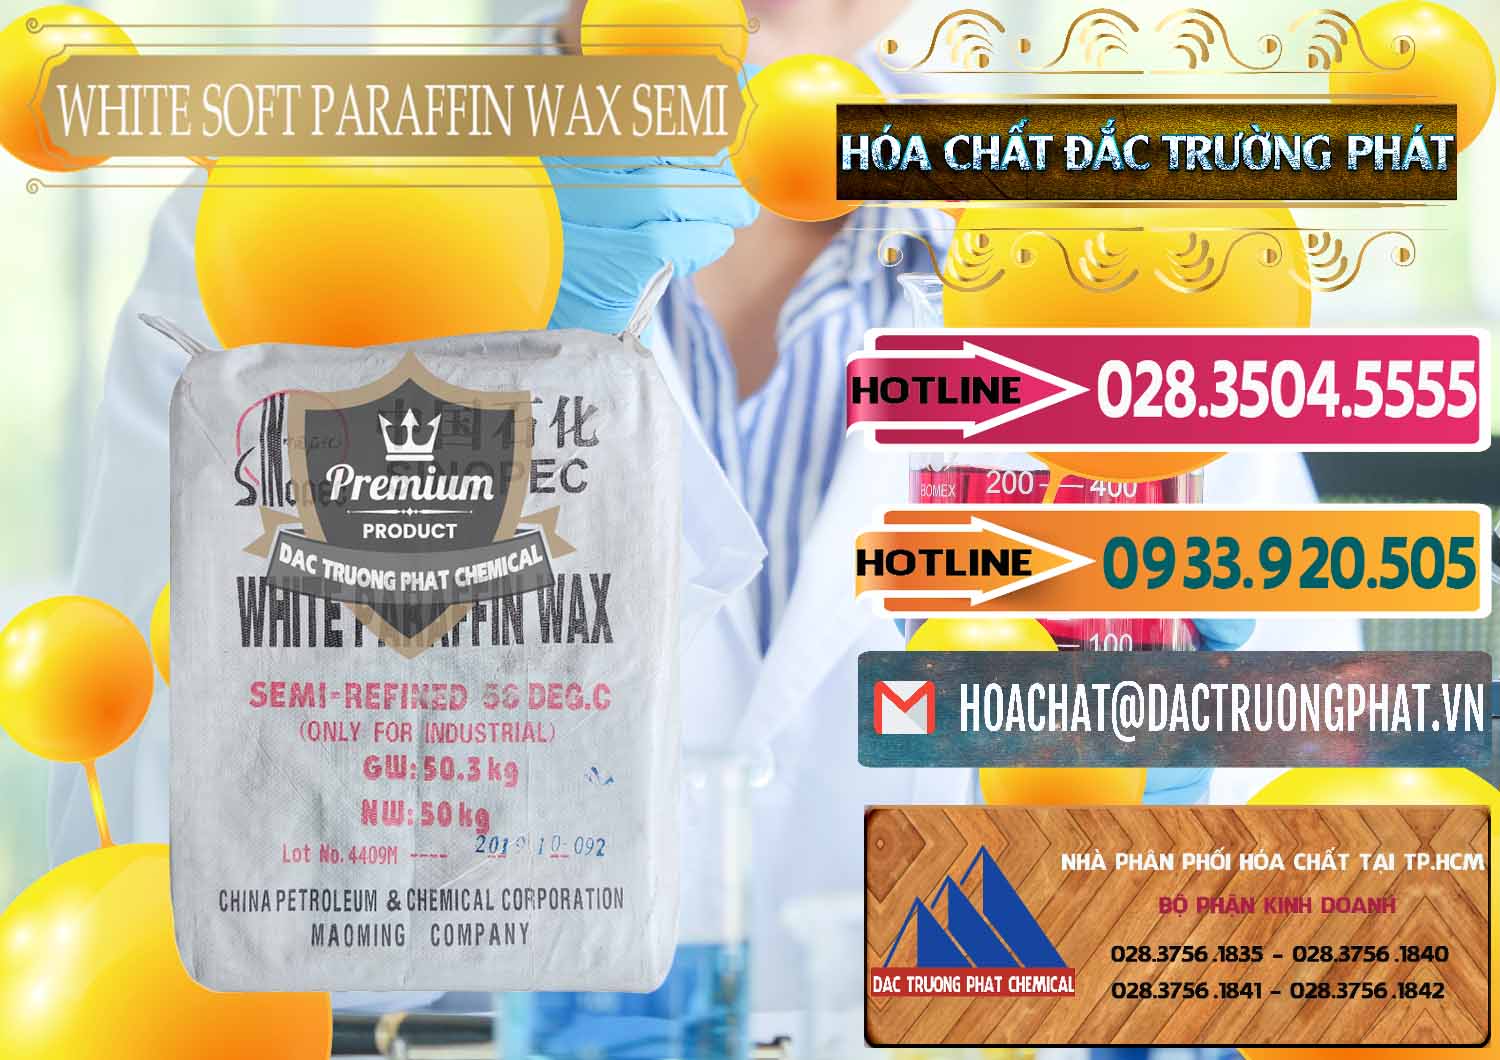 Cty bán và cung ứng Sáp Paraffin Wax Sinopec Trung Quốc China - 0328 - Nơi chuyên bán và phân phối hóa chất tại TP.HCM - dactruongphat.vn